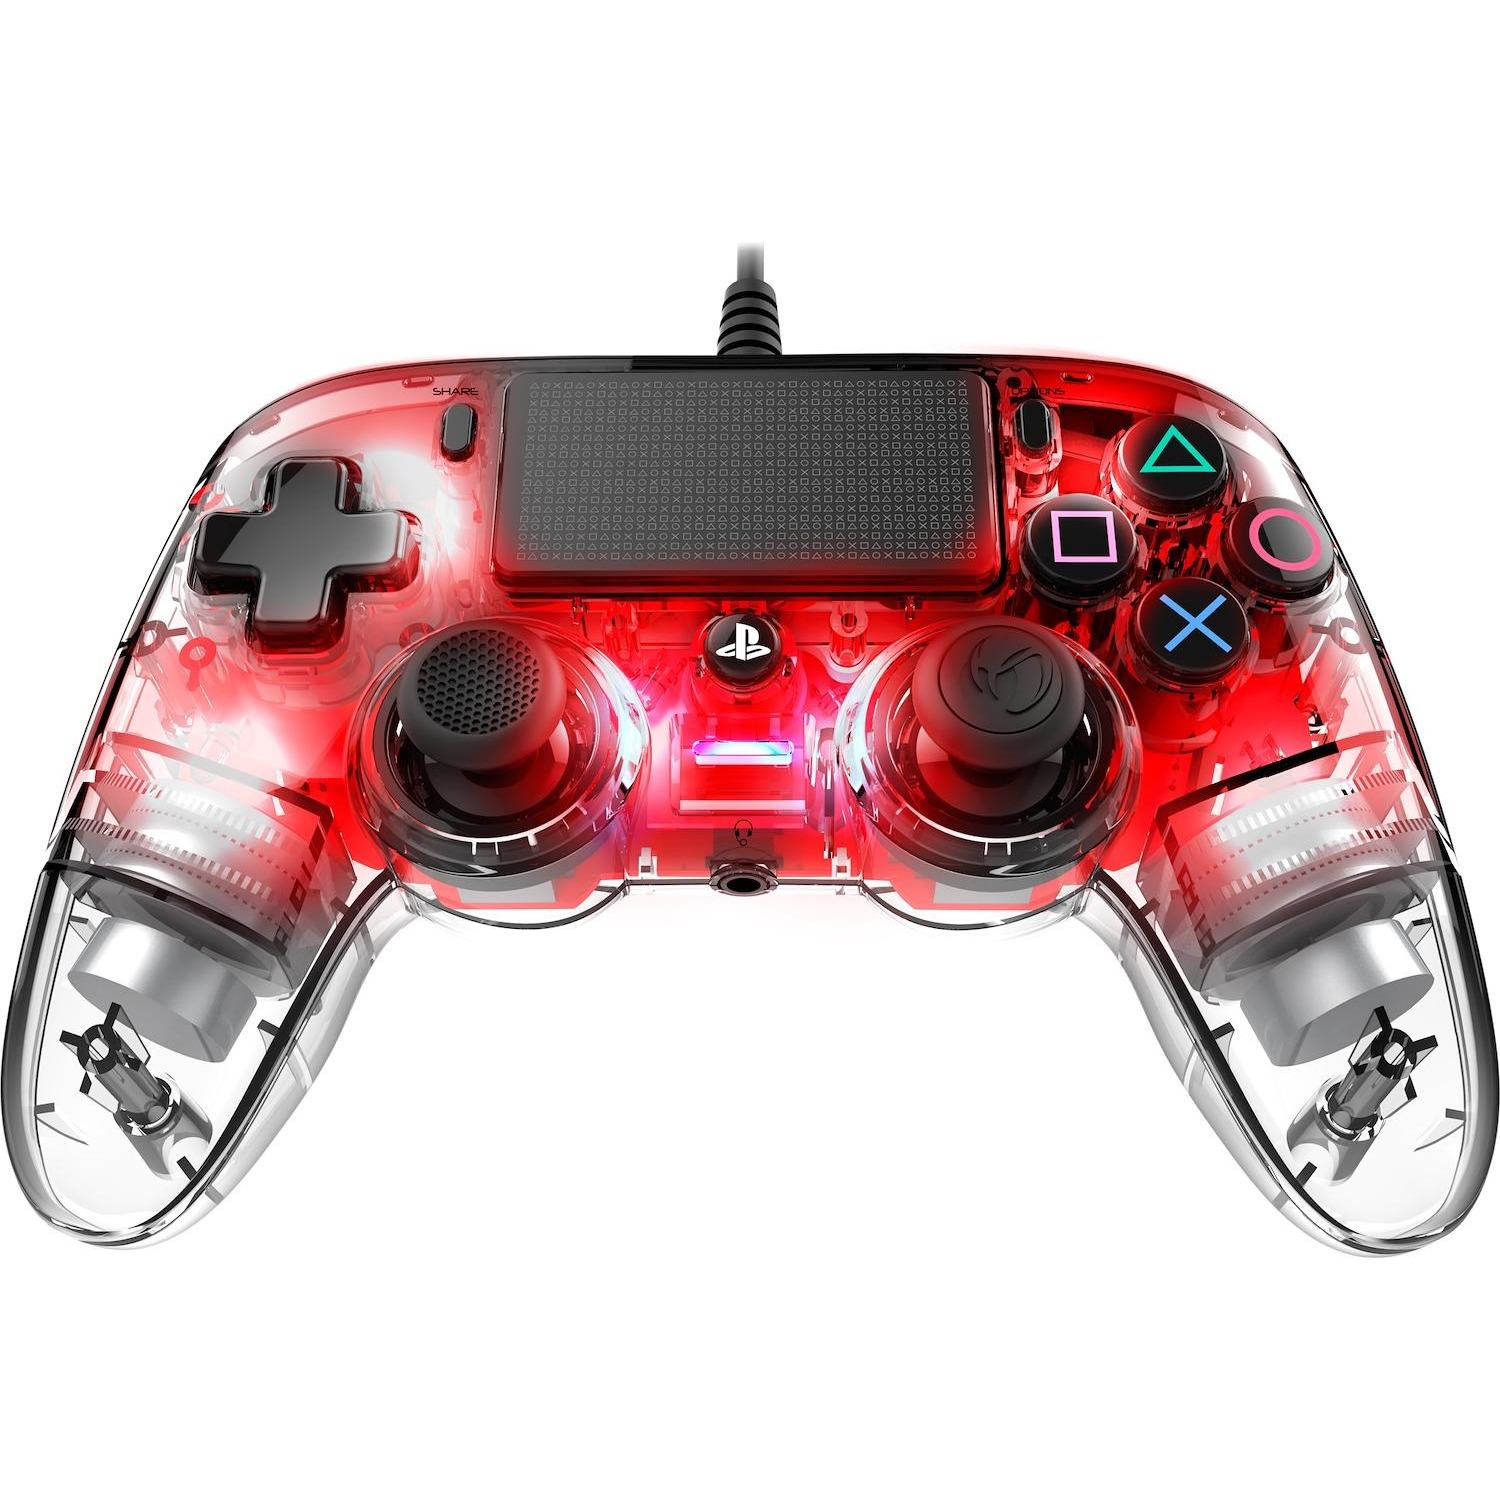 Immagine per Nacon PS4 Pad Compact Light Red Wired Controller da DIMOStore